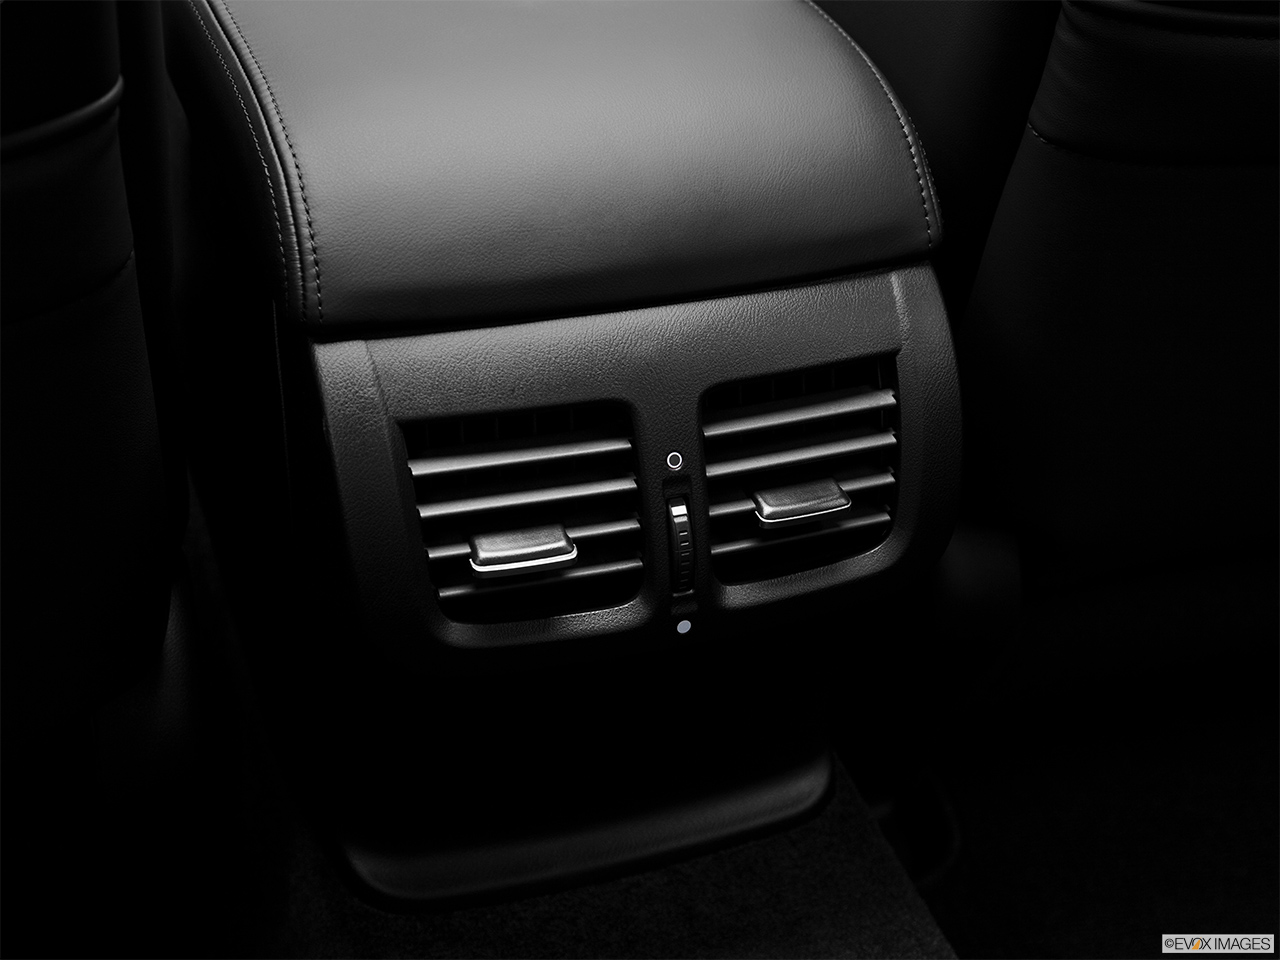 2012 Acura TL TL Rear A/C controls. 